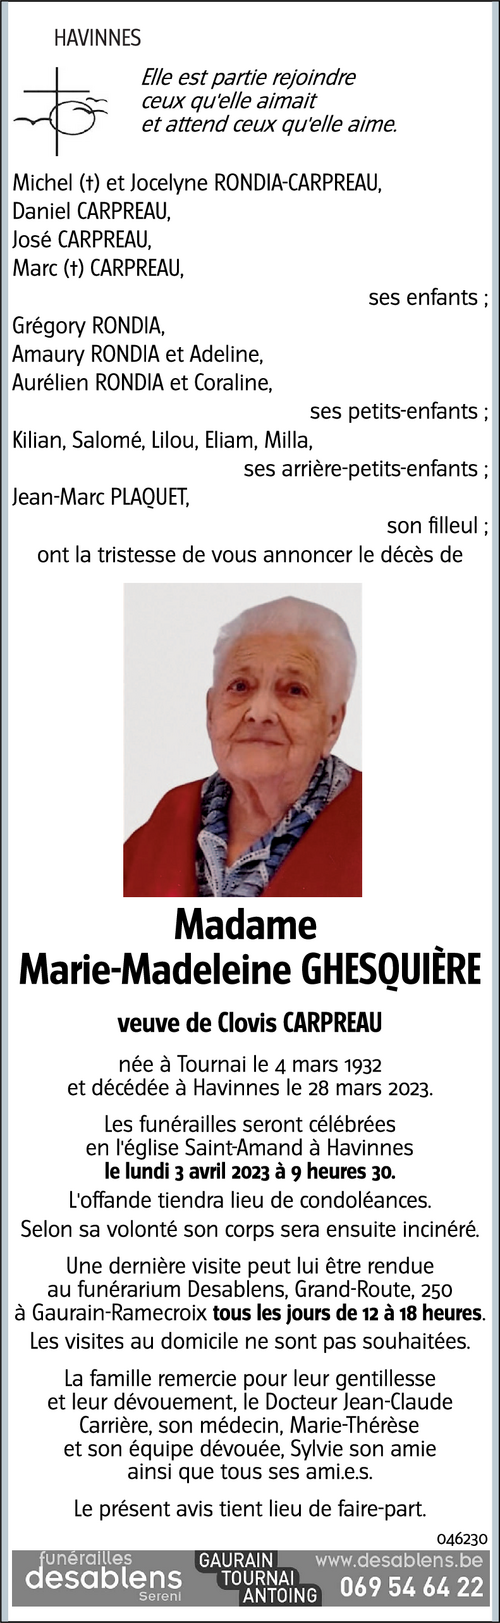 Marie-Madeleine GHESQUIÈRE